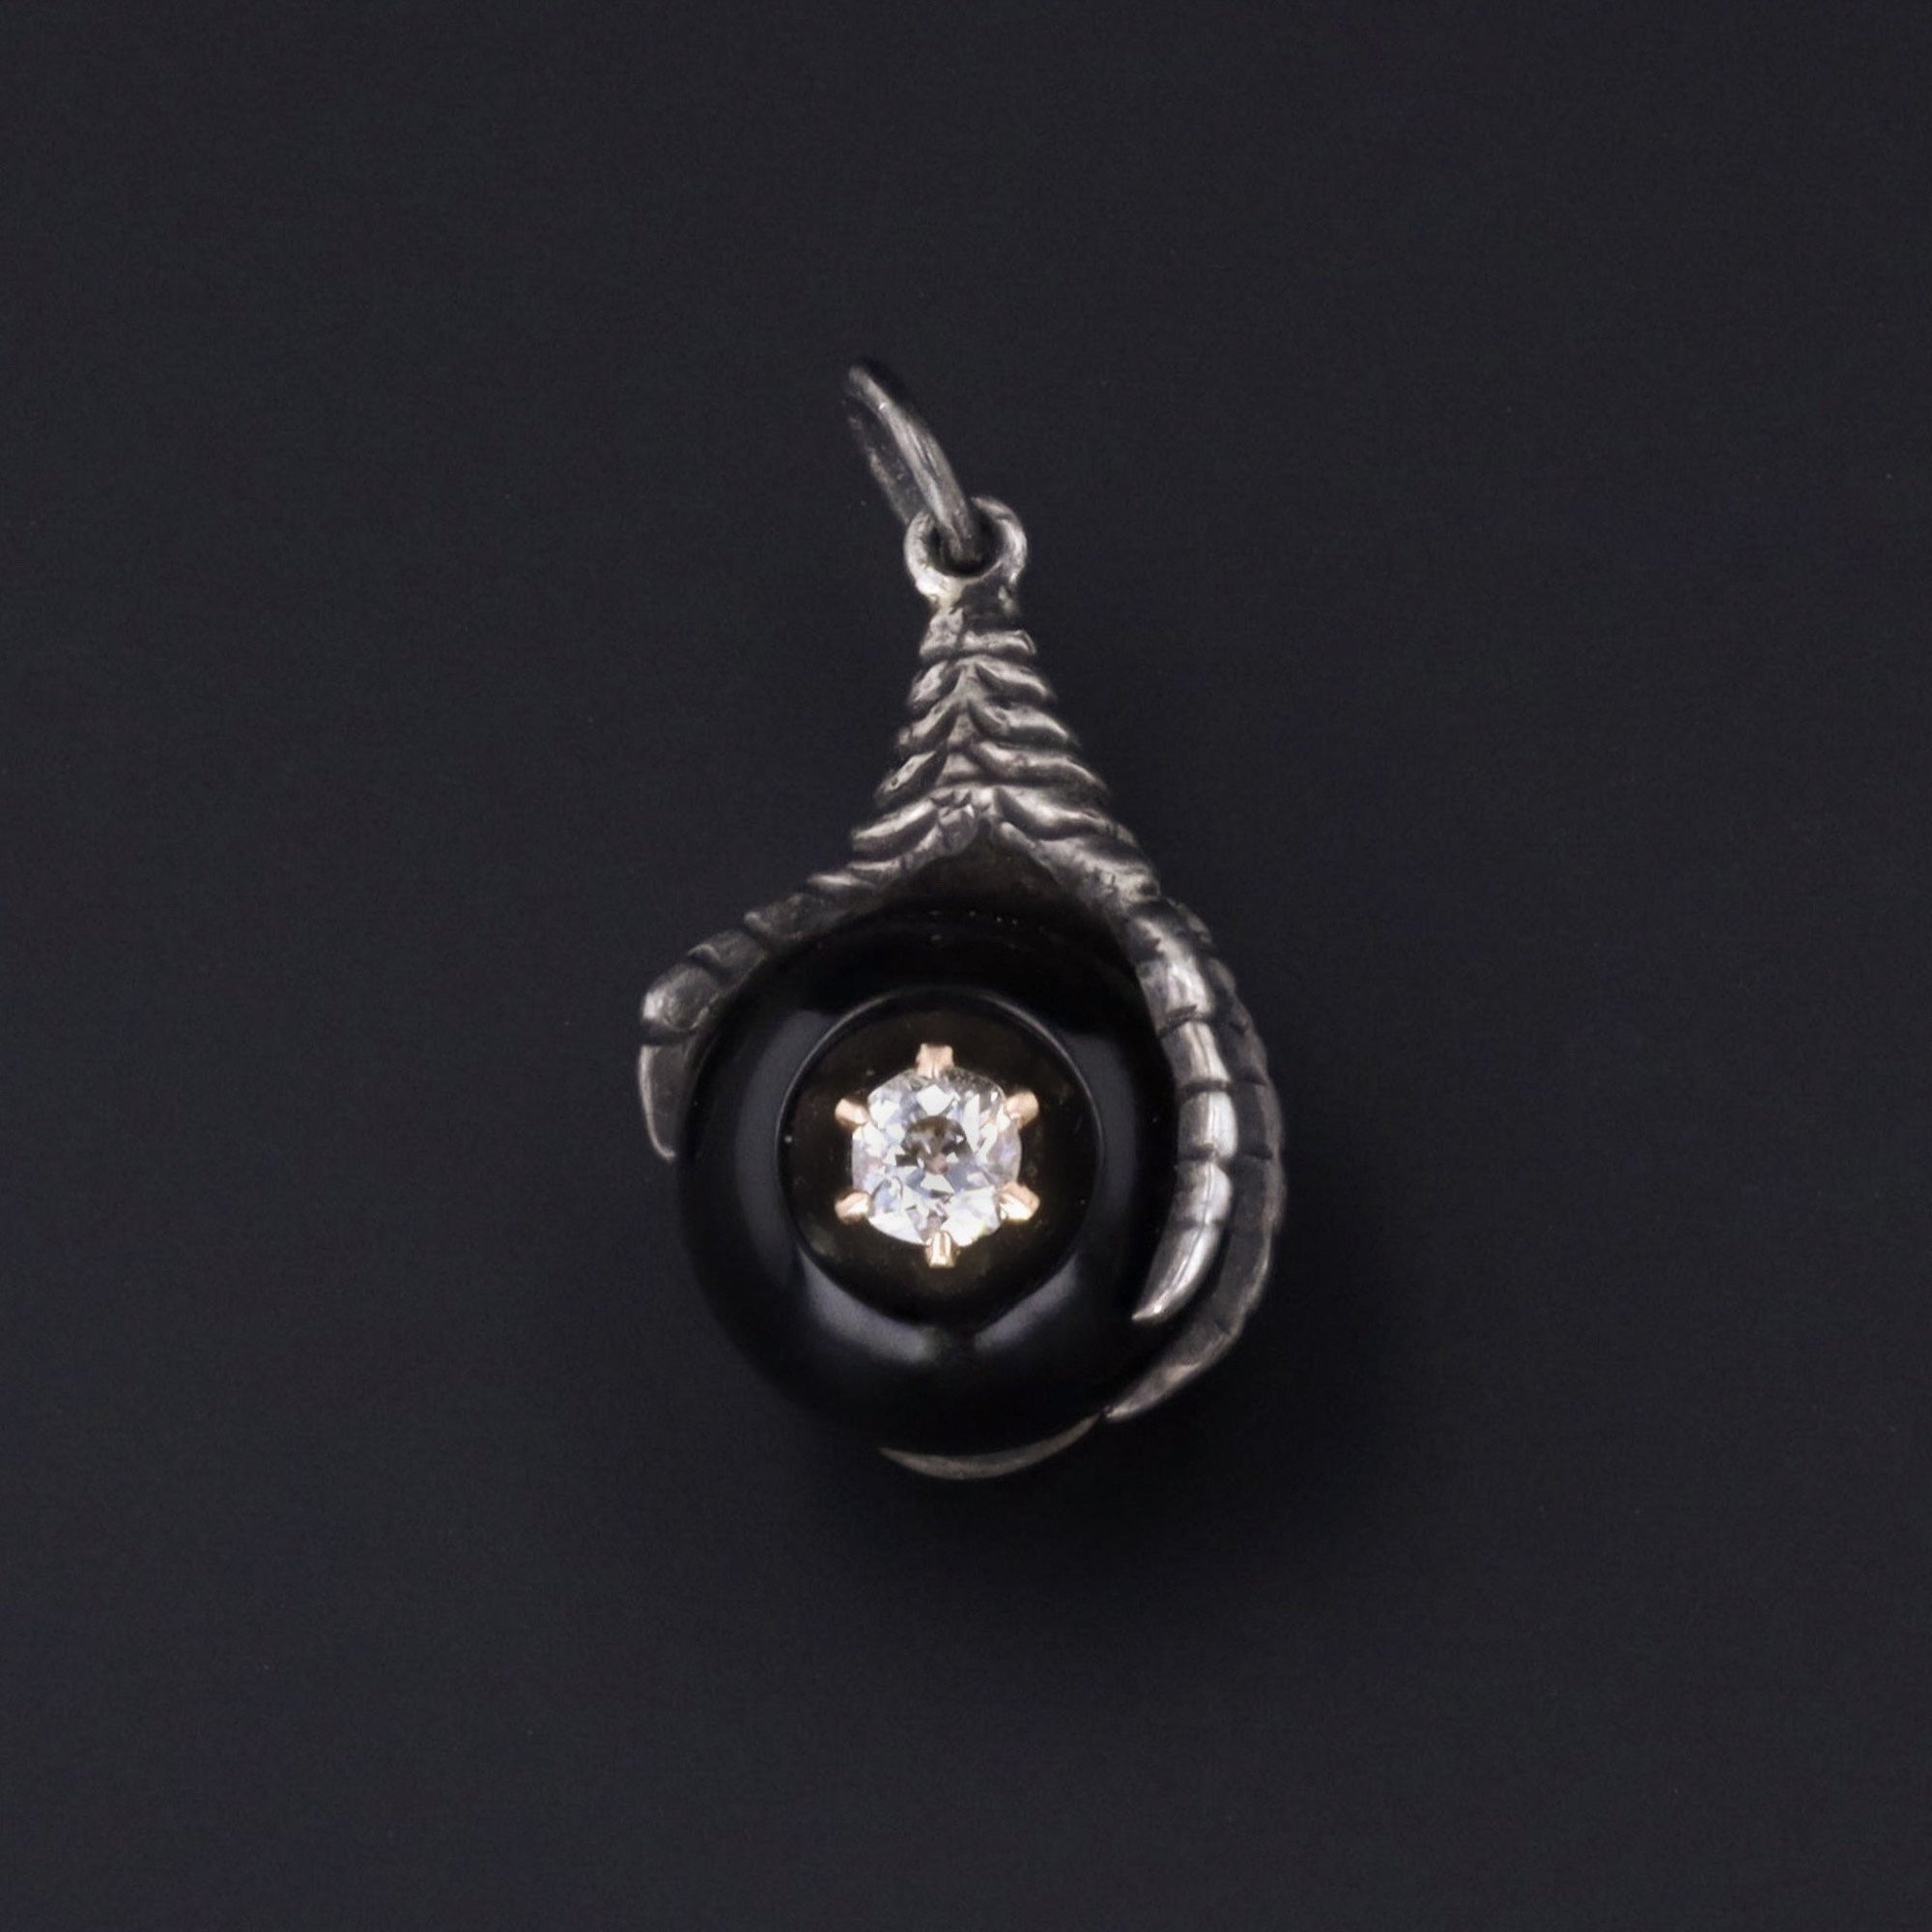 Silver & Onyx Talon or Claw Charm | Antique Diamond Talon Charm | Silver Charm | Antique Pin Conversion